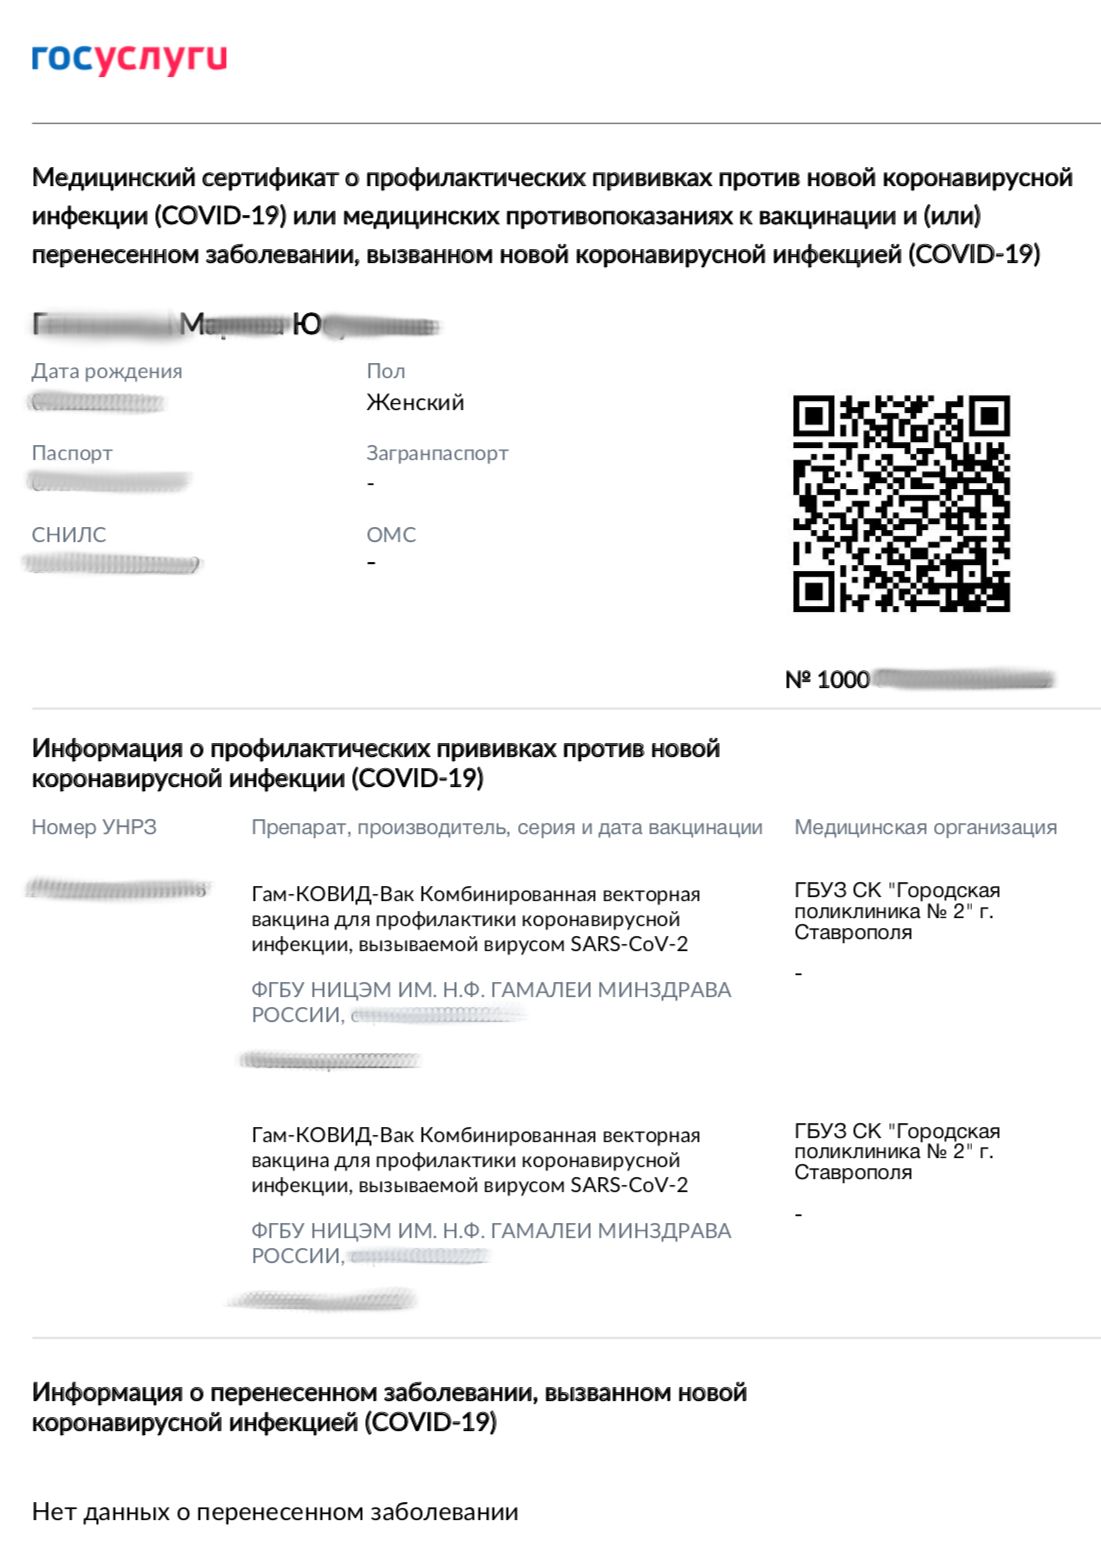 Электронный образец нового сертификата о вакцинации на русском языке